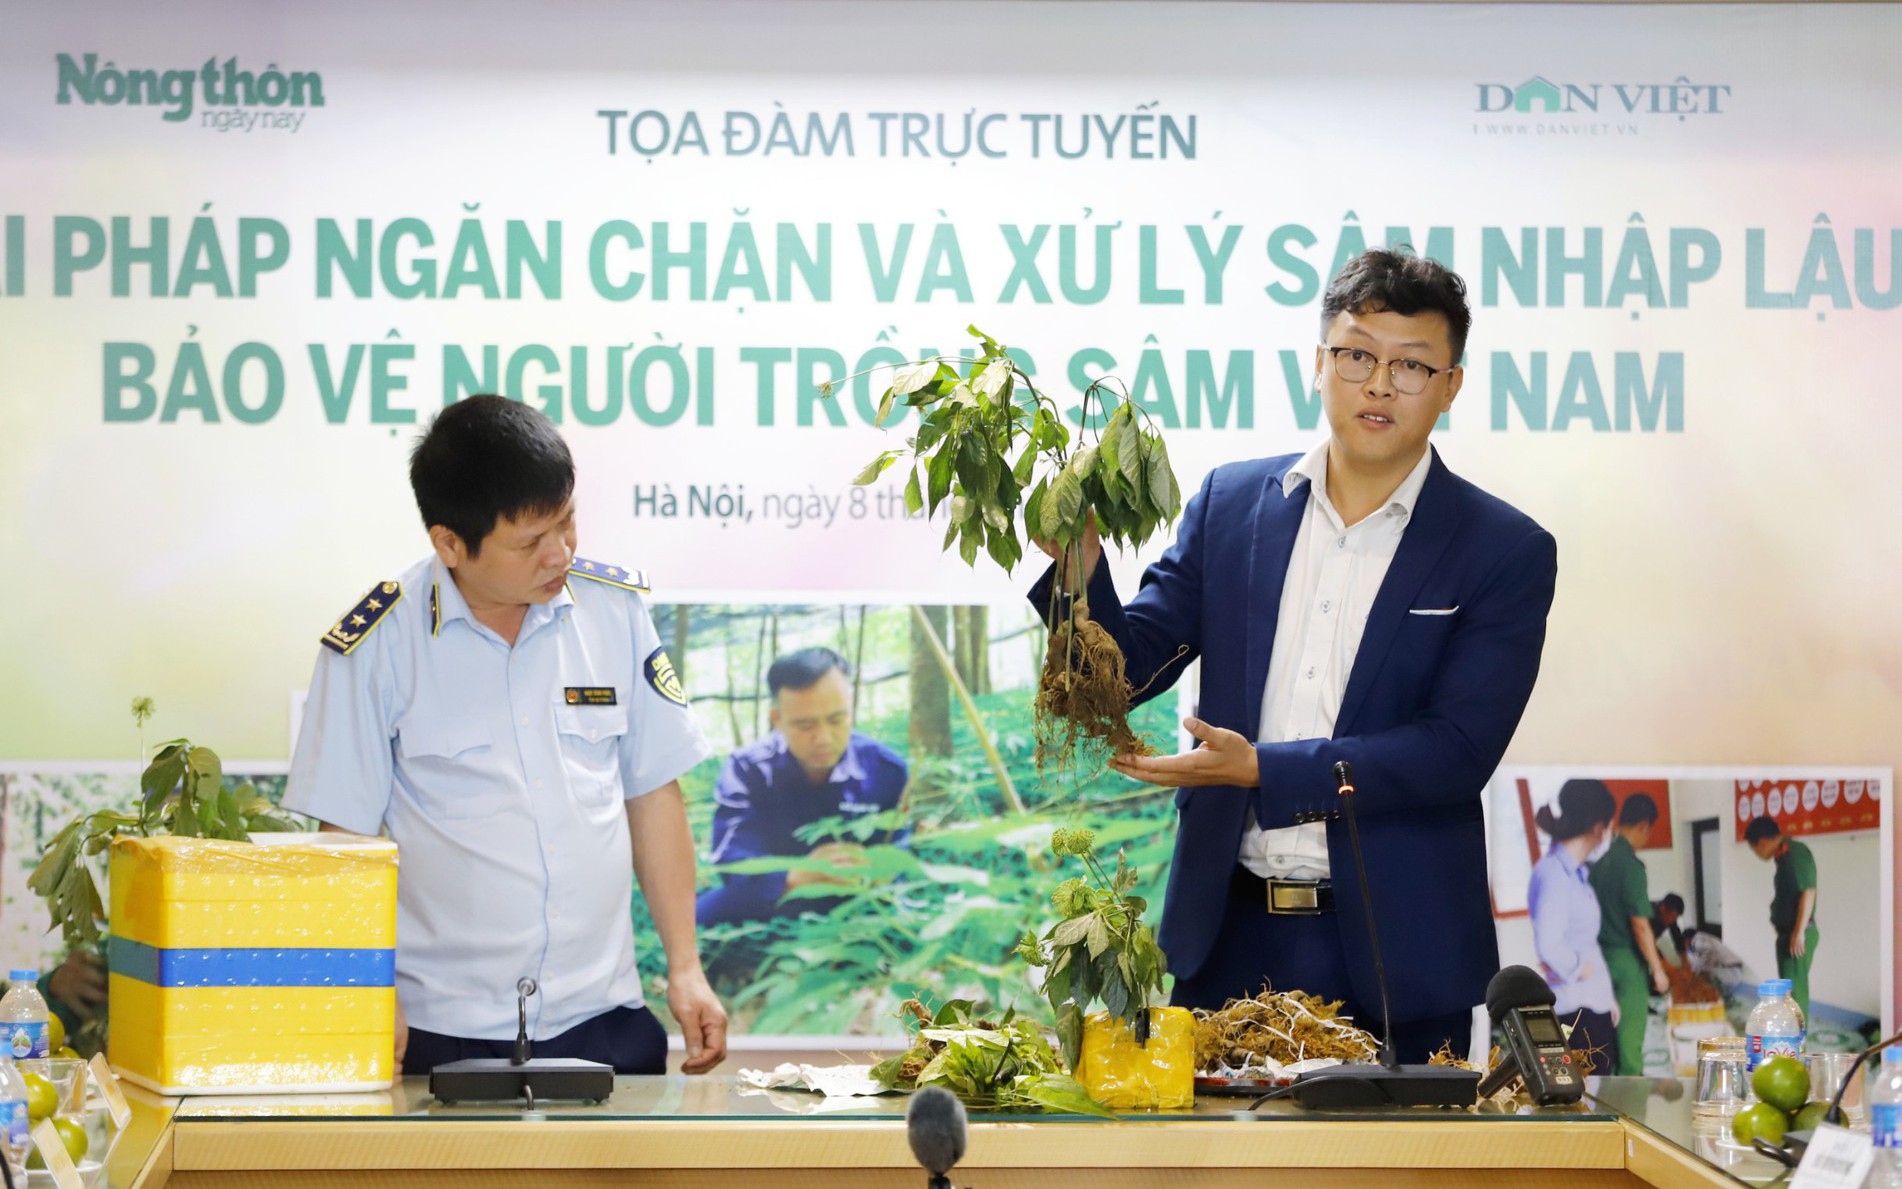 Hình ảnh tọa đàm "Giải pháp ngăn chặn và xử lý sâm nhập lậu, bảo vệ người trồng sâm Việt Nam"